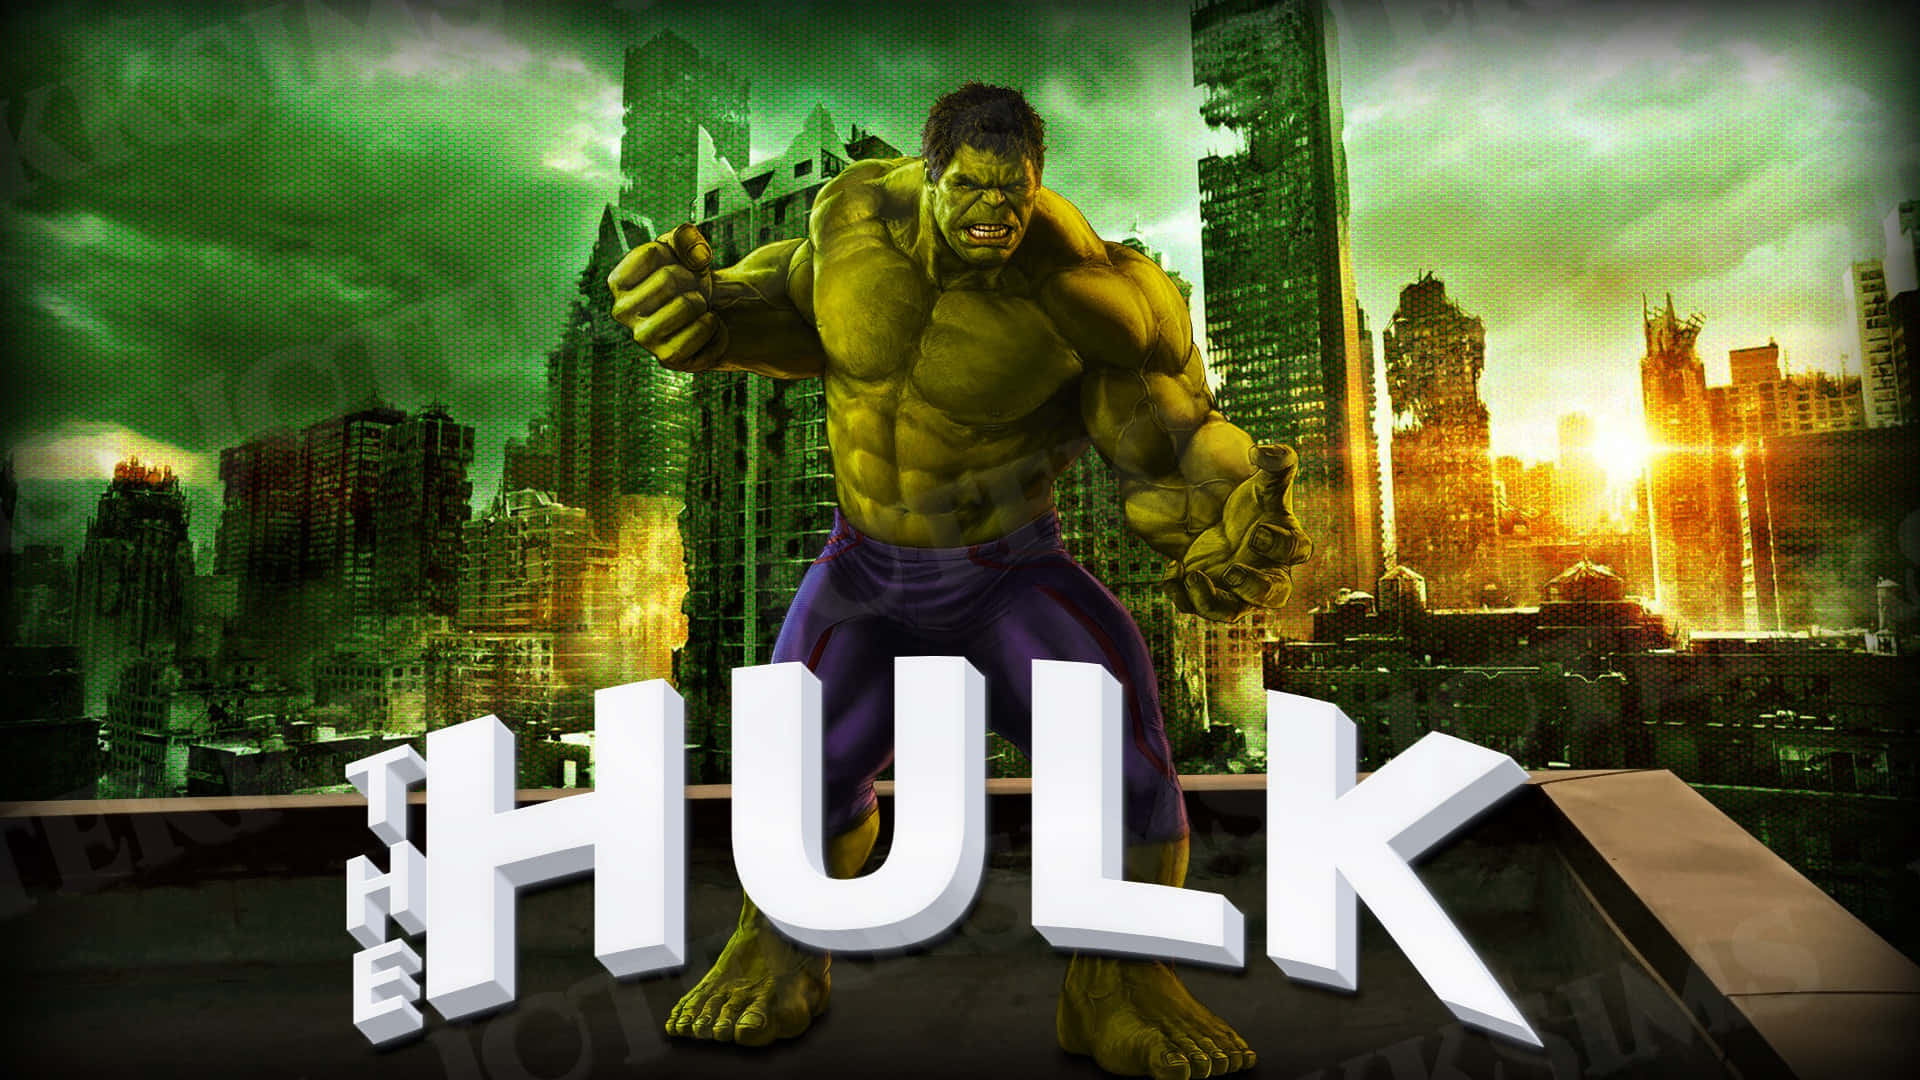 Derunglaubliche Hulk Entfesselt Seine Wut.